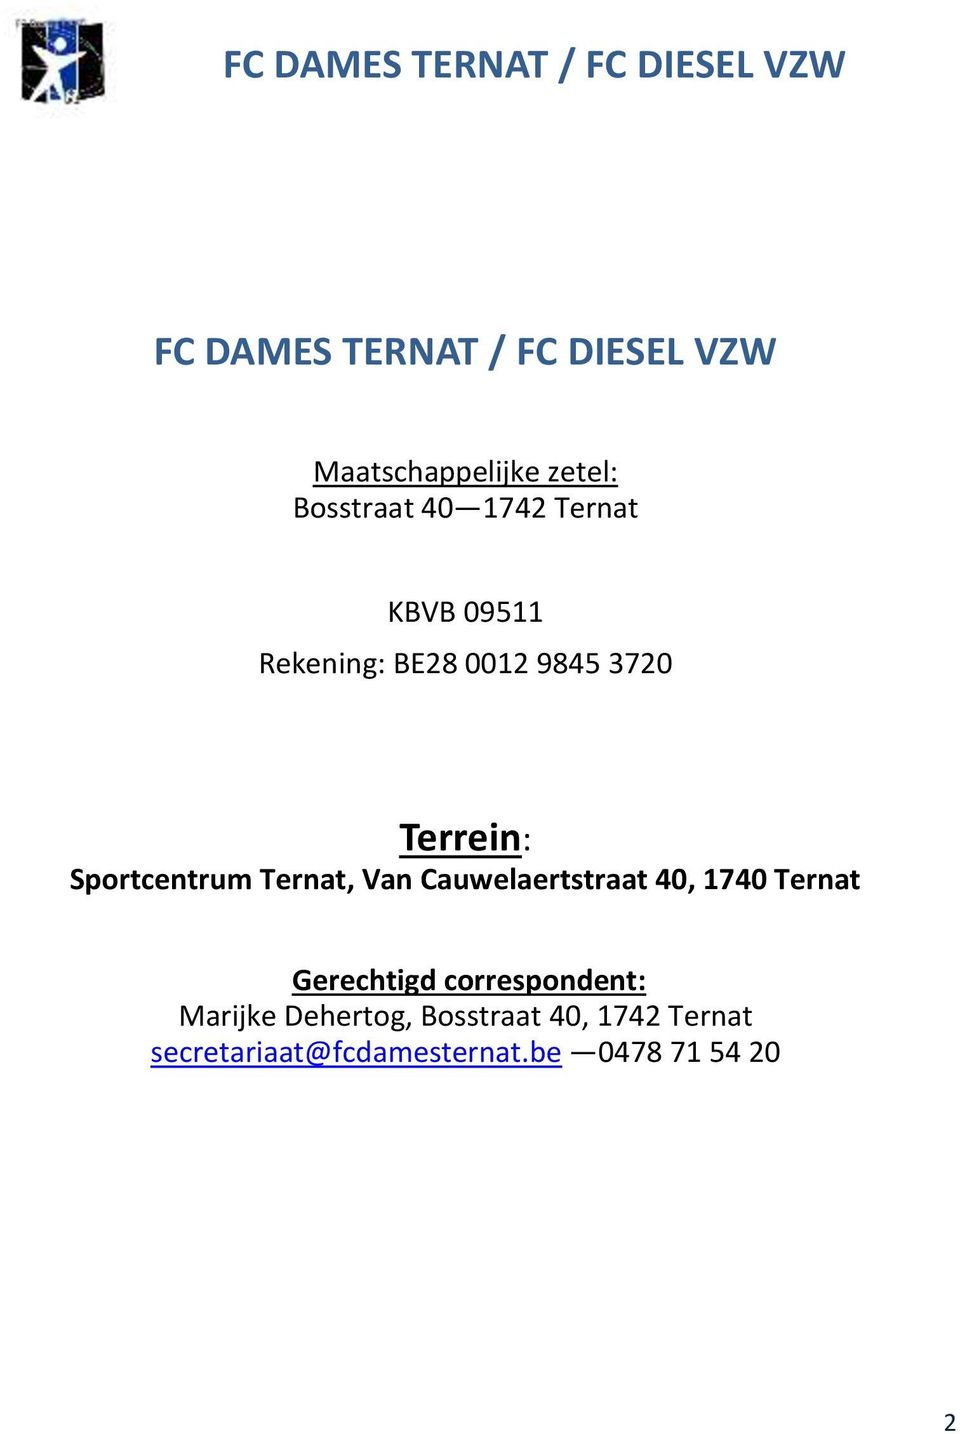 Sportcentrum Ternat, Van Cauwelaertstraat 40, 1740 Ternat Gerechtigd correspondent: